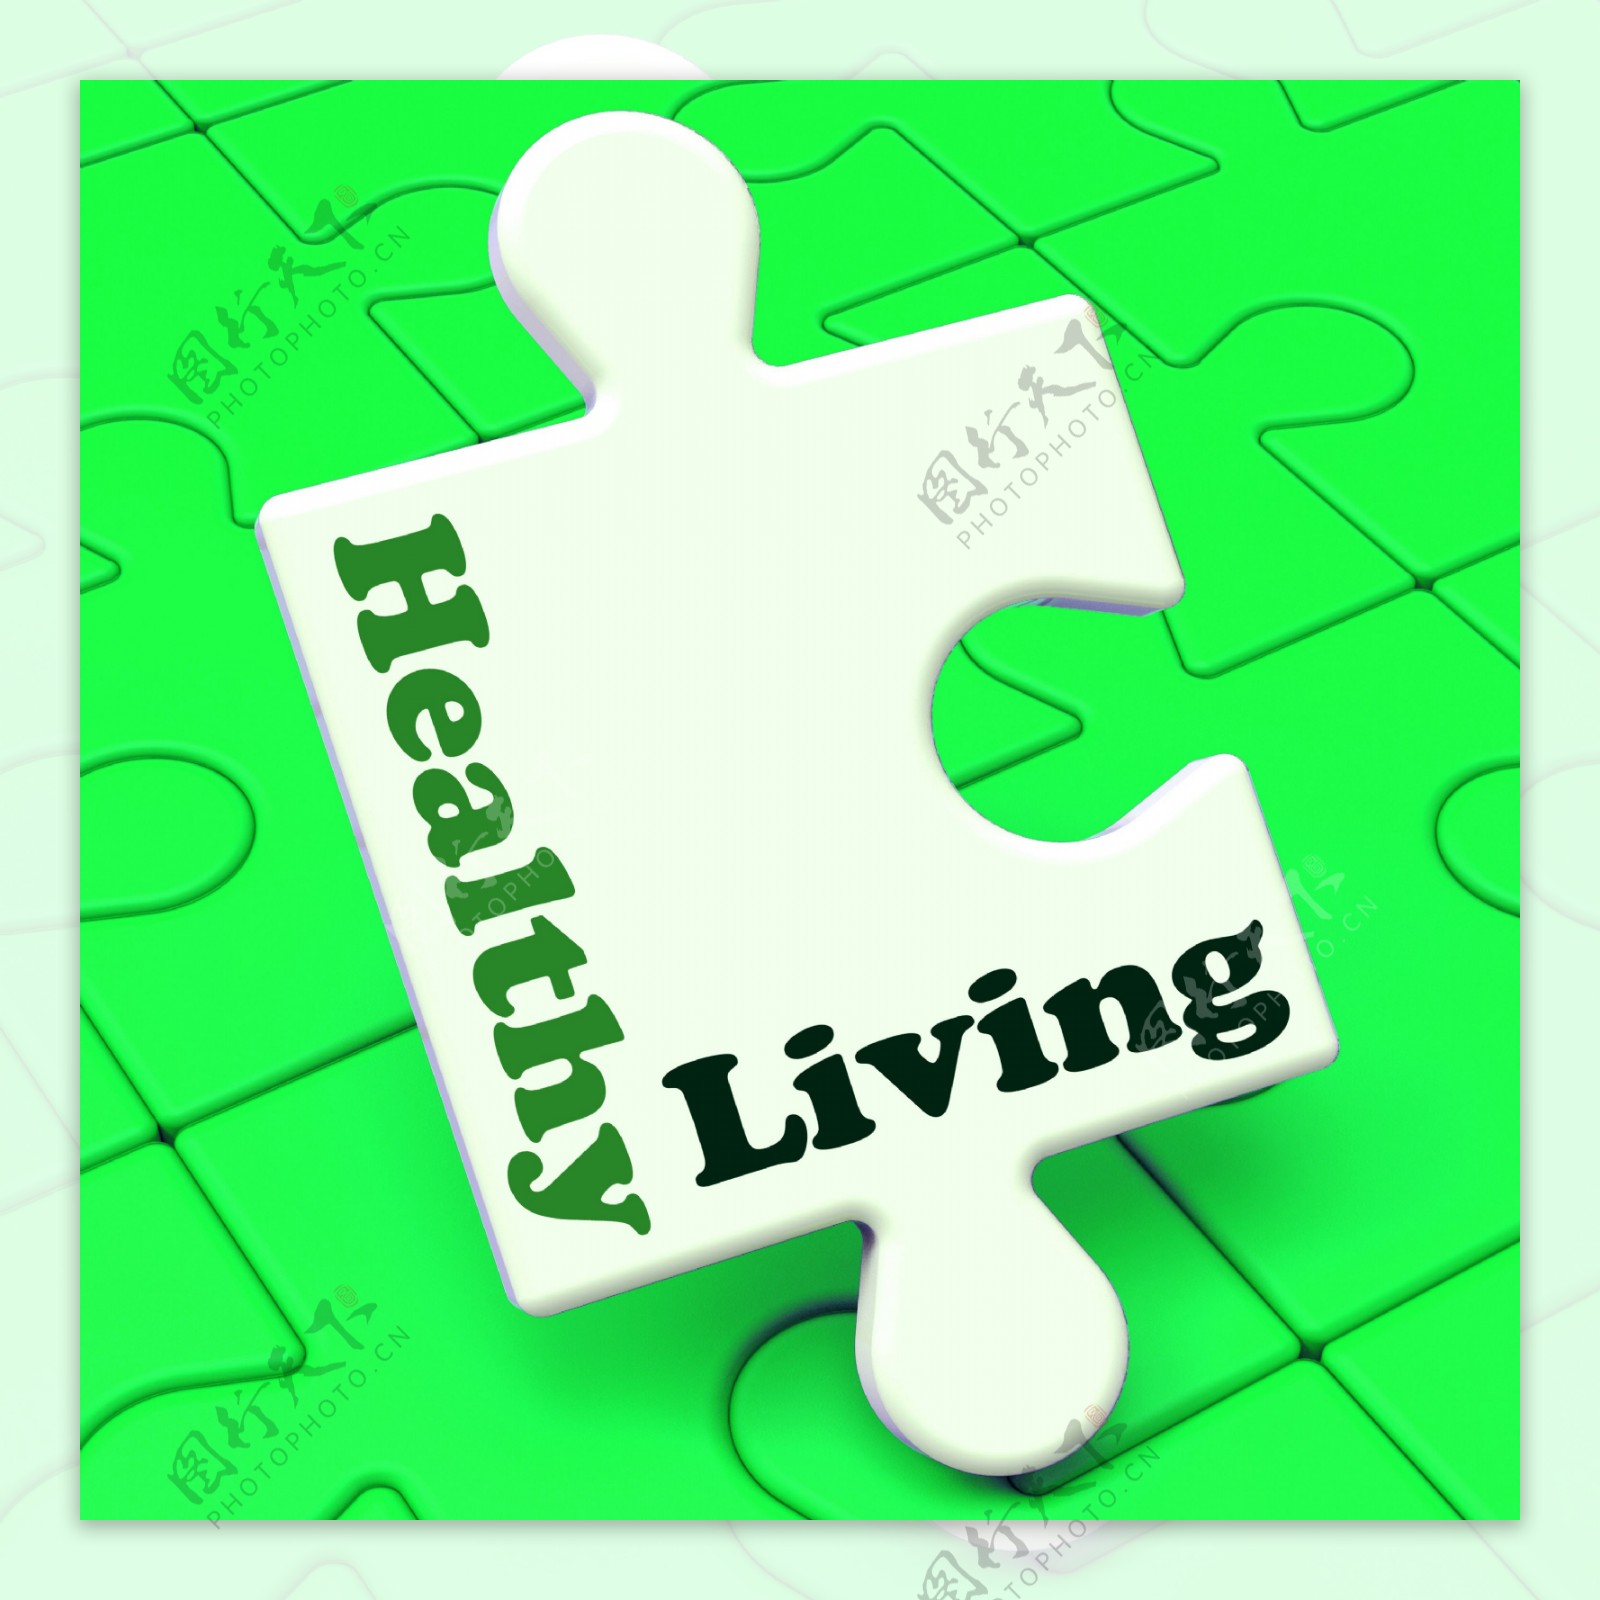 健康的生活表明健身和营养的生活方式